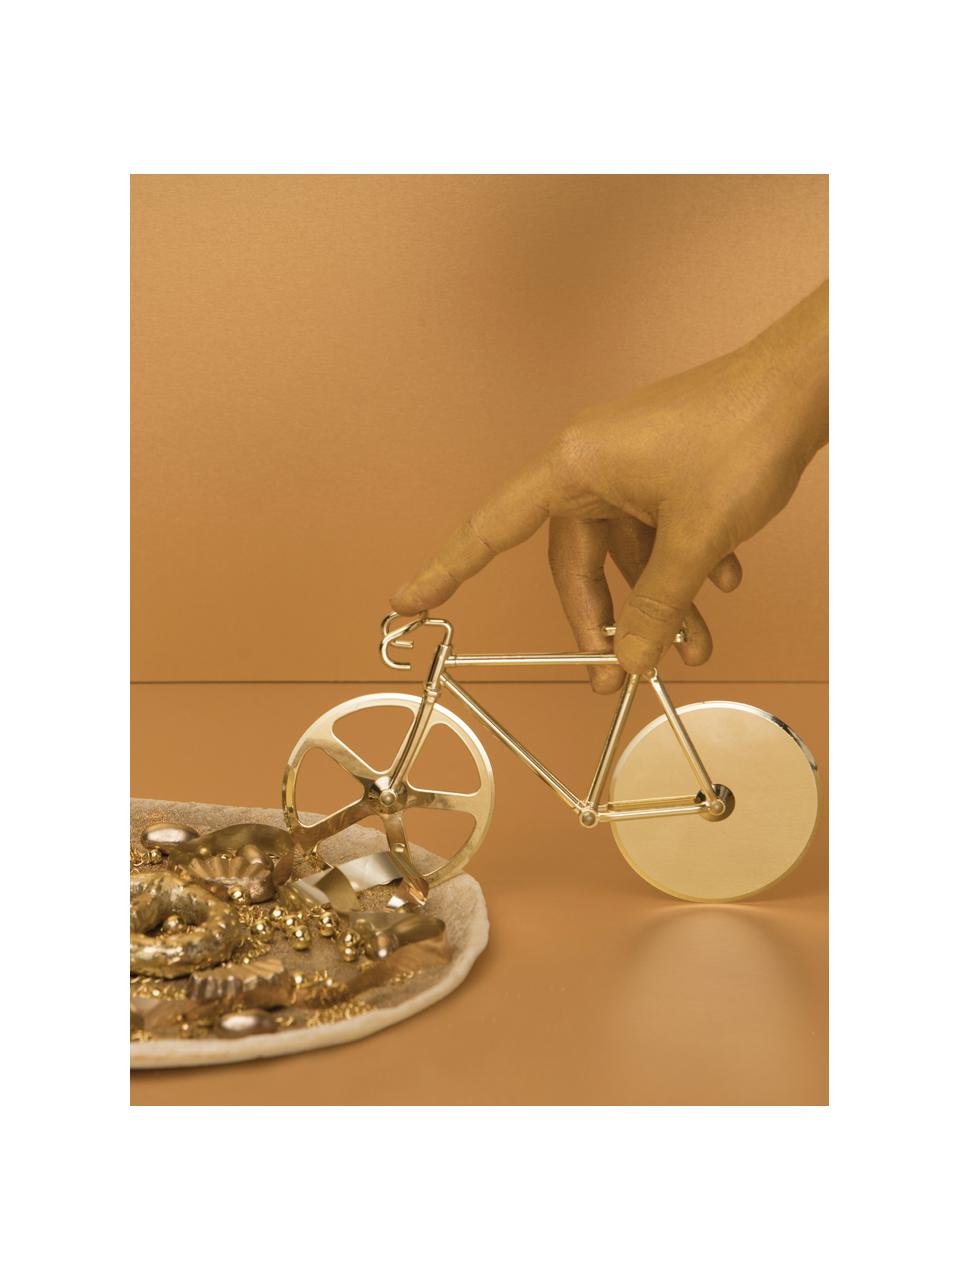 Goldfarbener Pizzaschneider Velo im Fahrraddesign aus Edelstahl, Edelstahl, beschichtet, Goldfarben, 23 x 13 cm